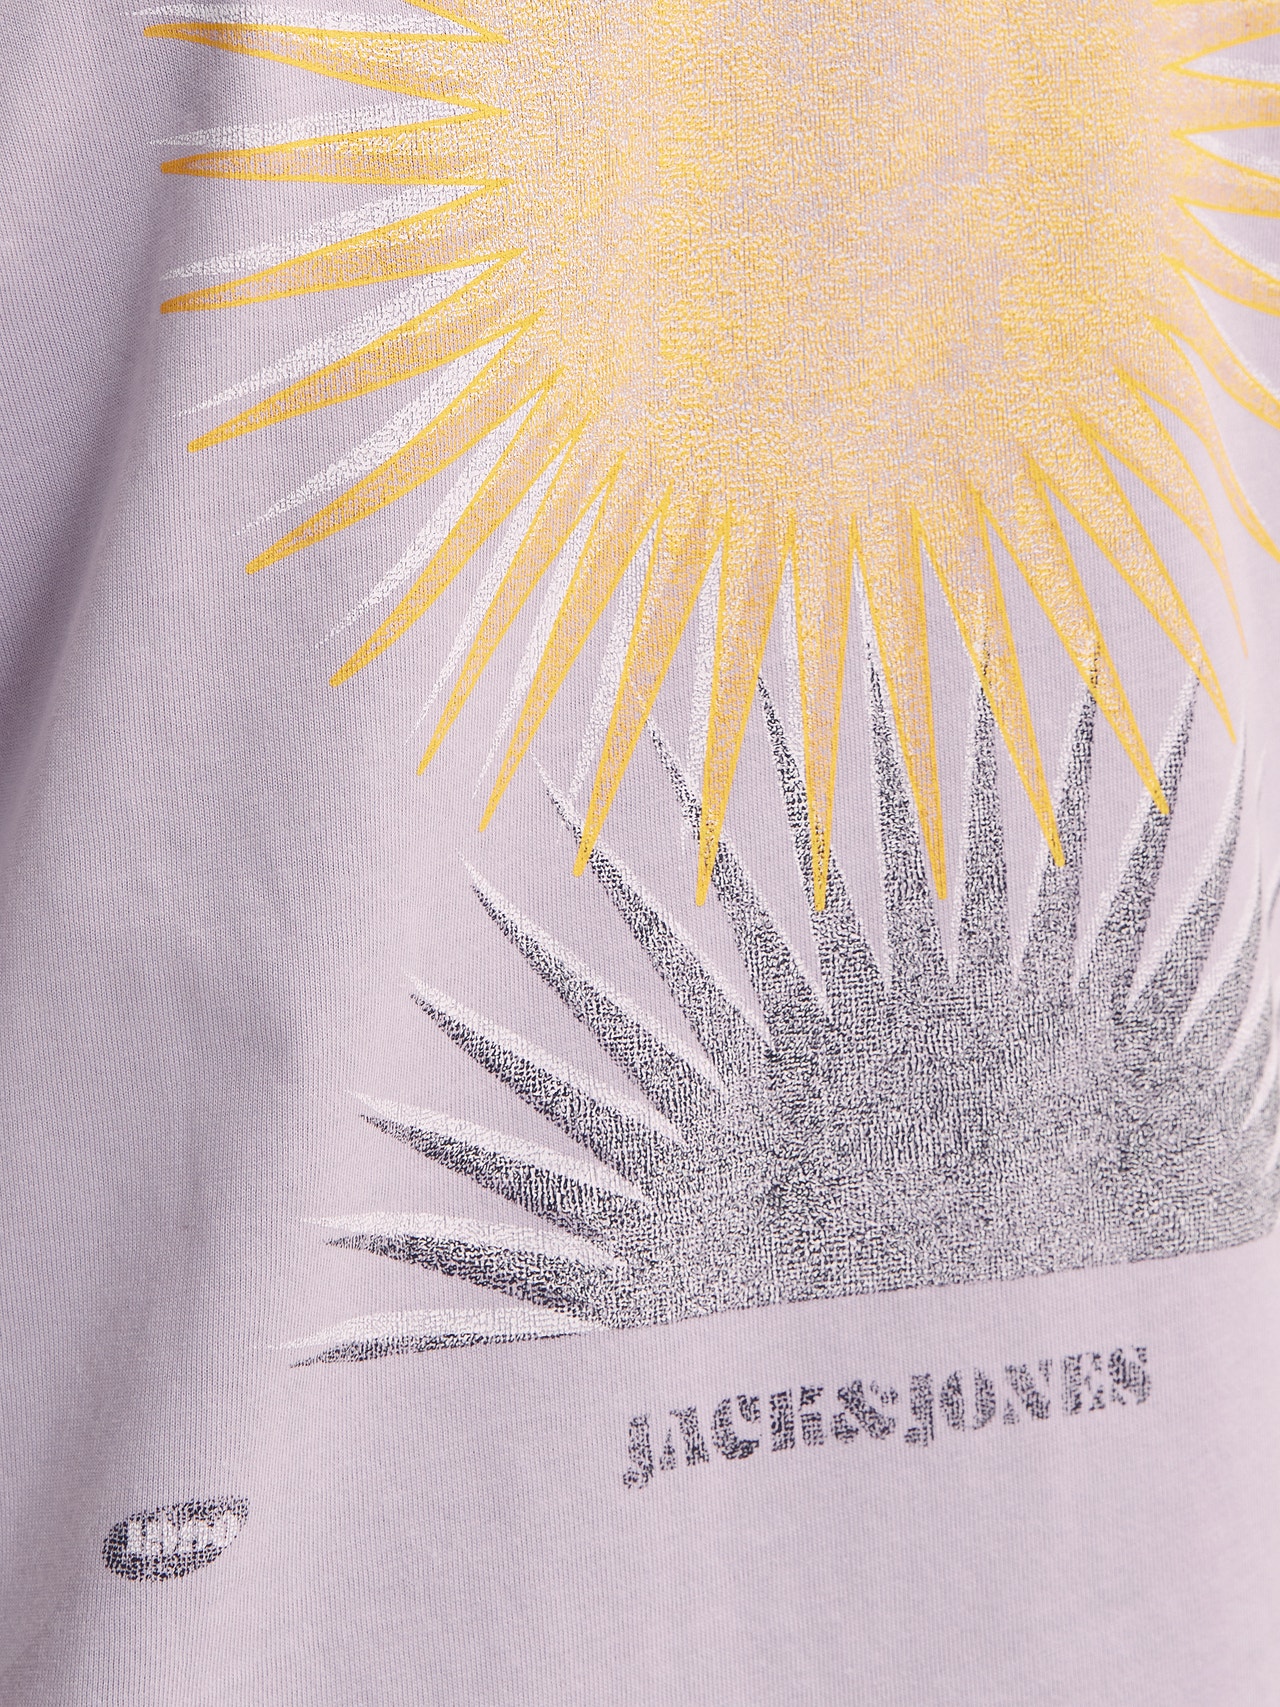 Jack & Jones Bedrukt T-shirt Voor jongens -Lavender Frost - 12257637